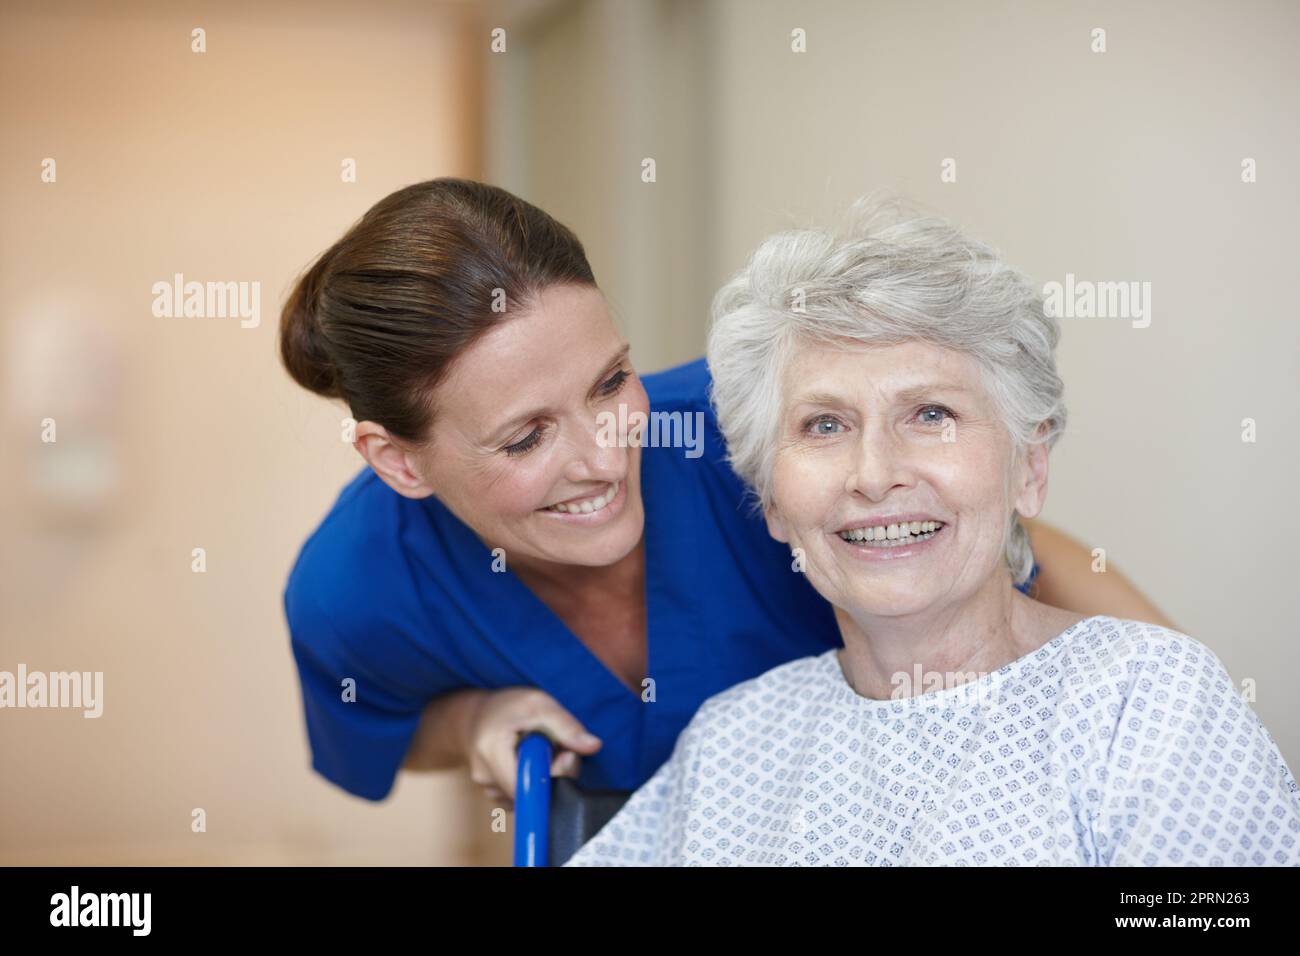 Große Sorgfalt und Mitgefühl geben. Porträt einer älteren Patientin mit einer Krankenschwester hinter ihr. Stockfoto